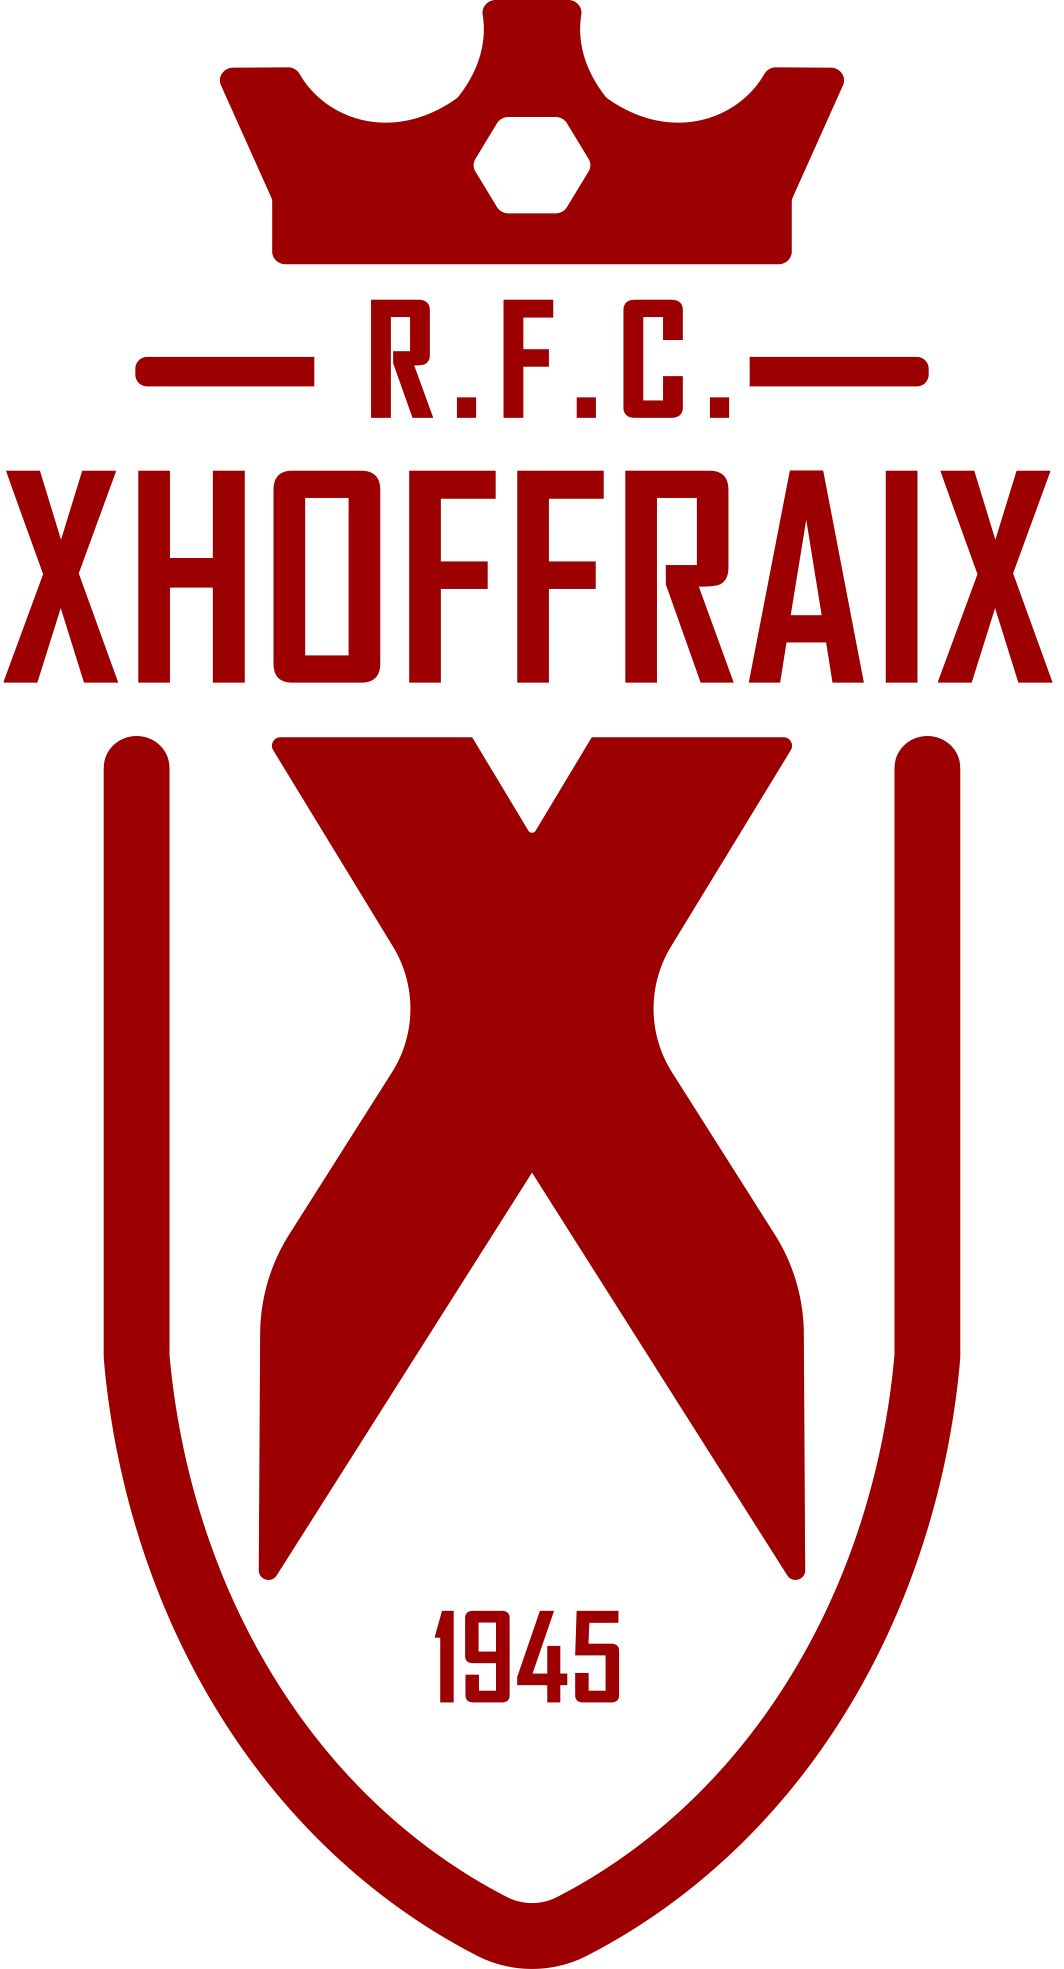 10 - R.F.C. Xhoffraix A